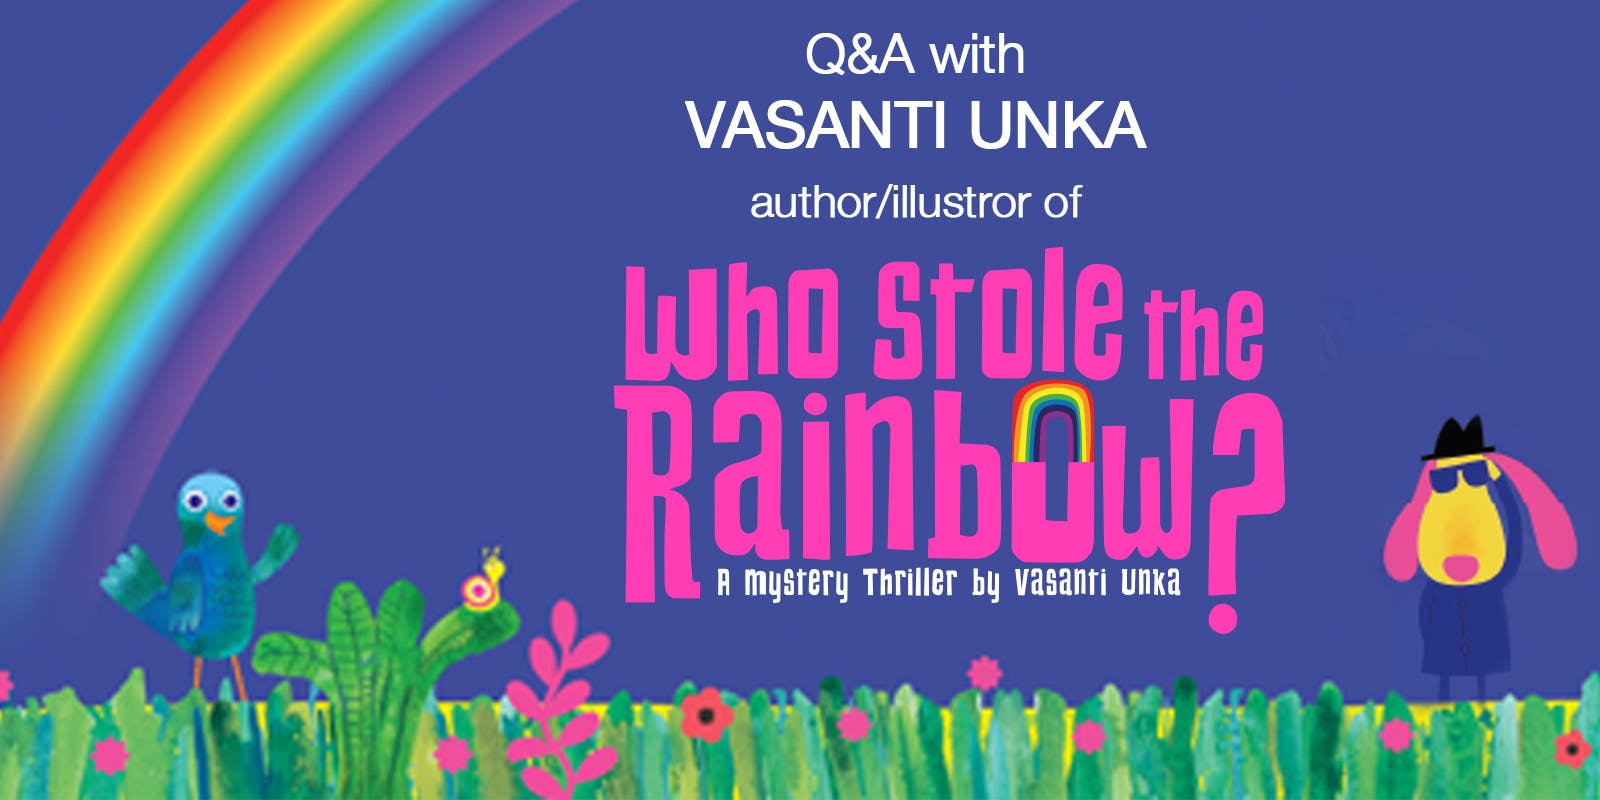 Q&A with Vasanti Unka